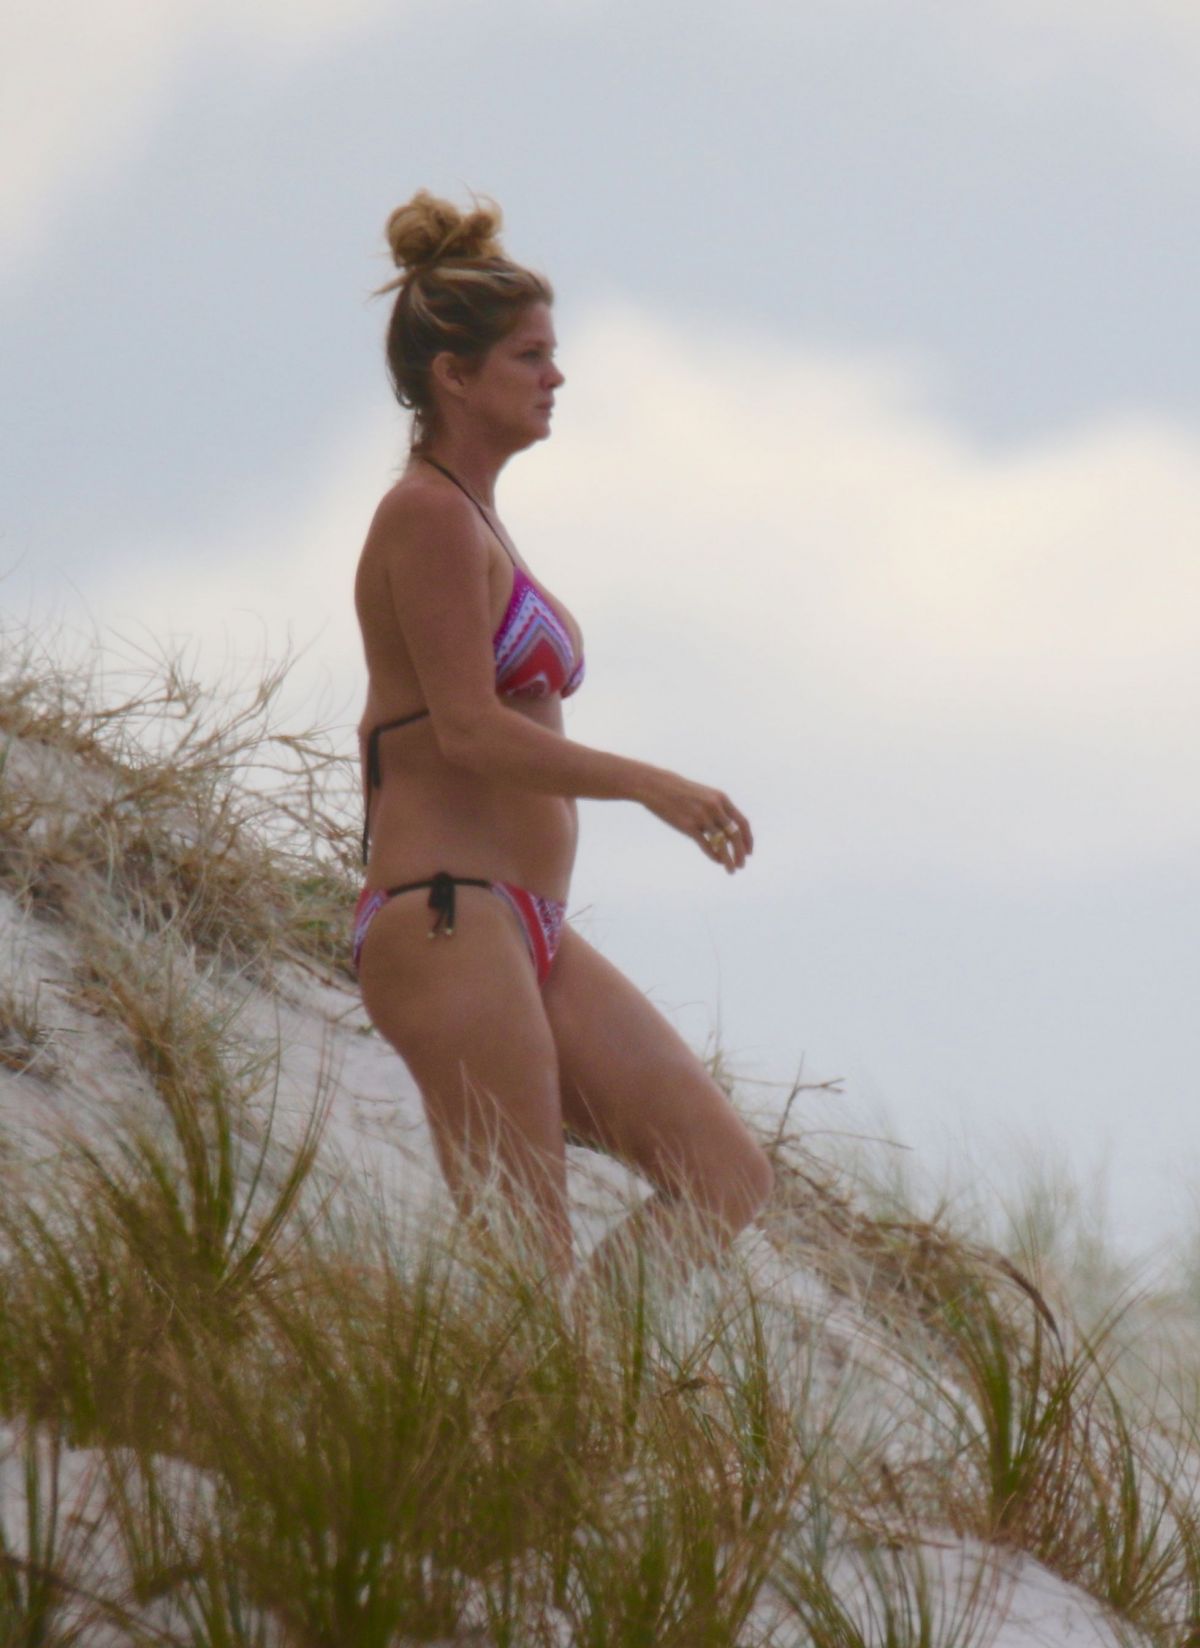 Rachel Hunter Wearing a bikini at a beach in New Zealand 